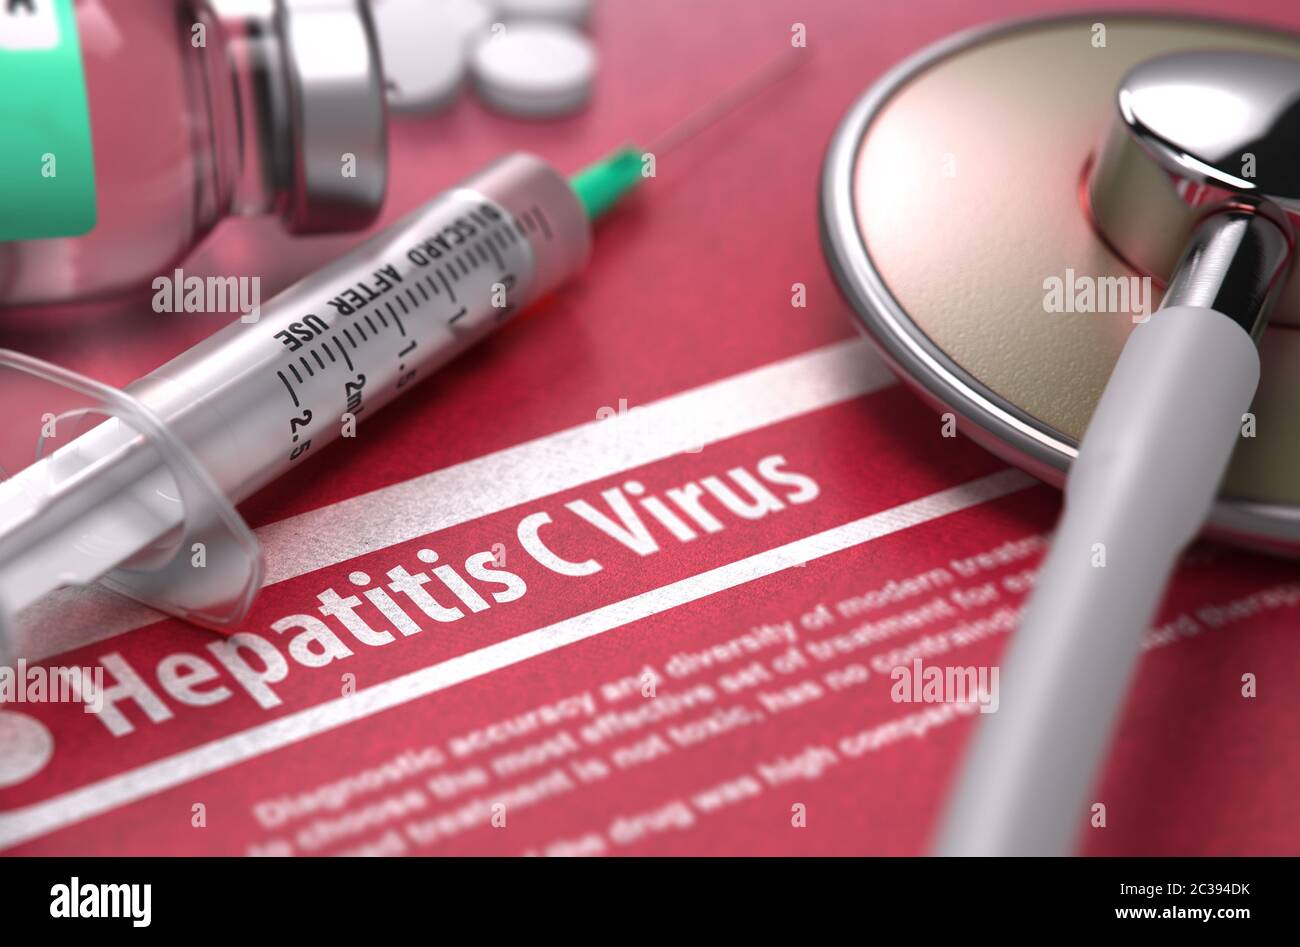 Virus dell'epatite C - Diagnosi stampata con testo sfocato su sfondo rosso e composizione medica - stetoscopio, pillole e siringa. Concetto medico. 3 Foto Stock